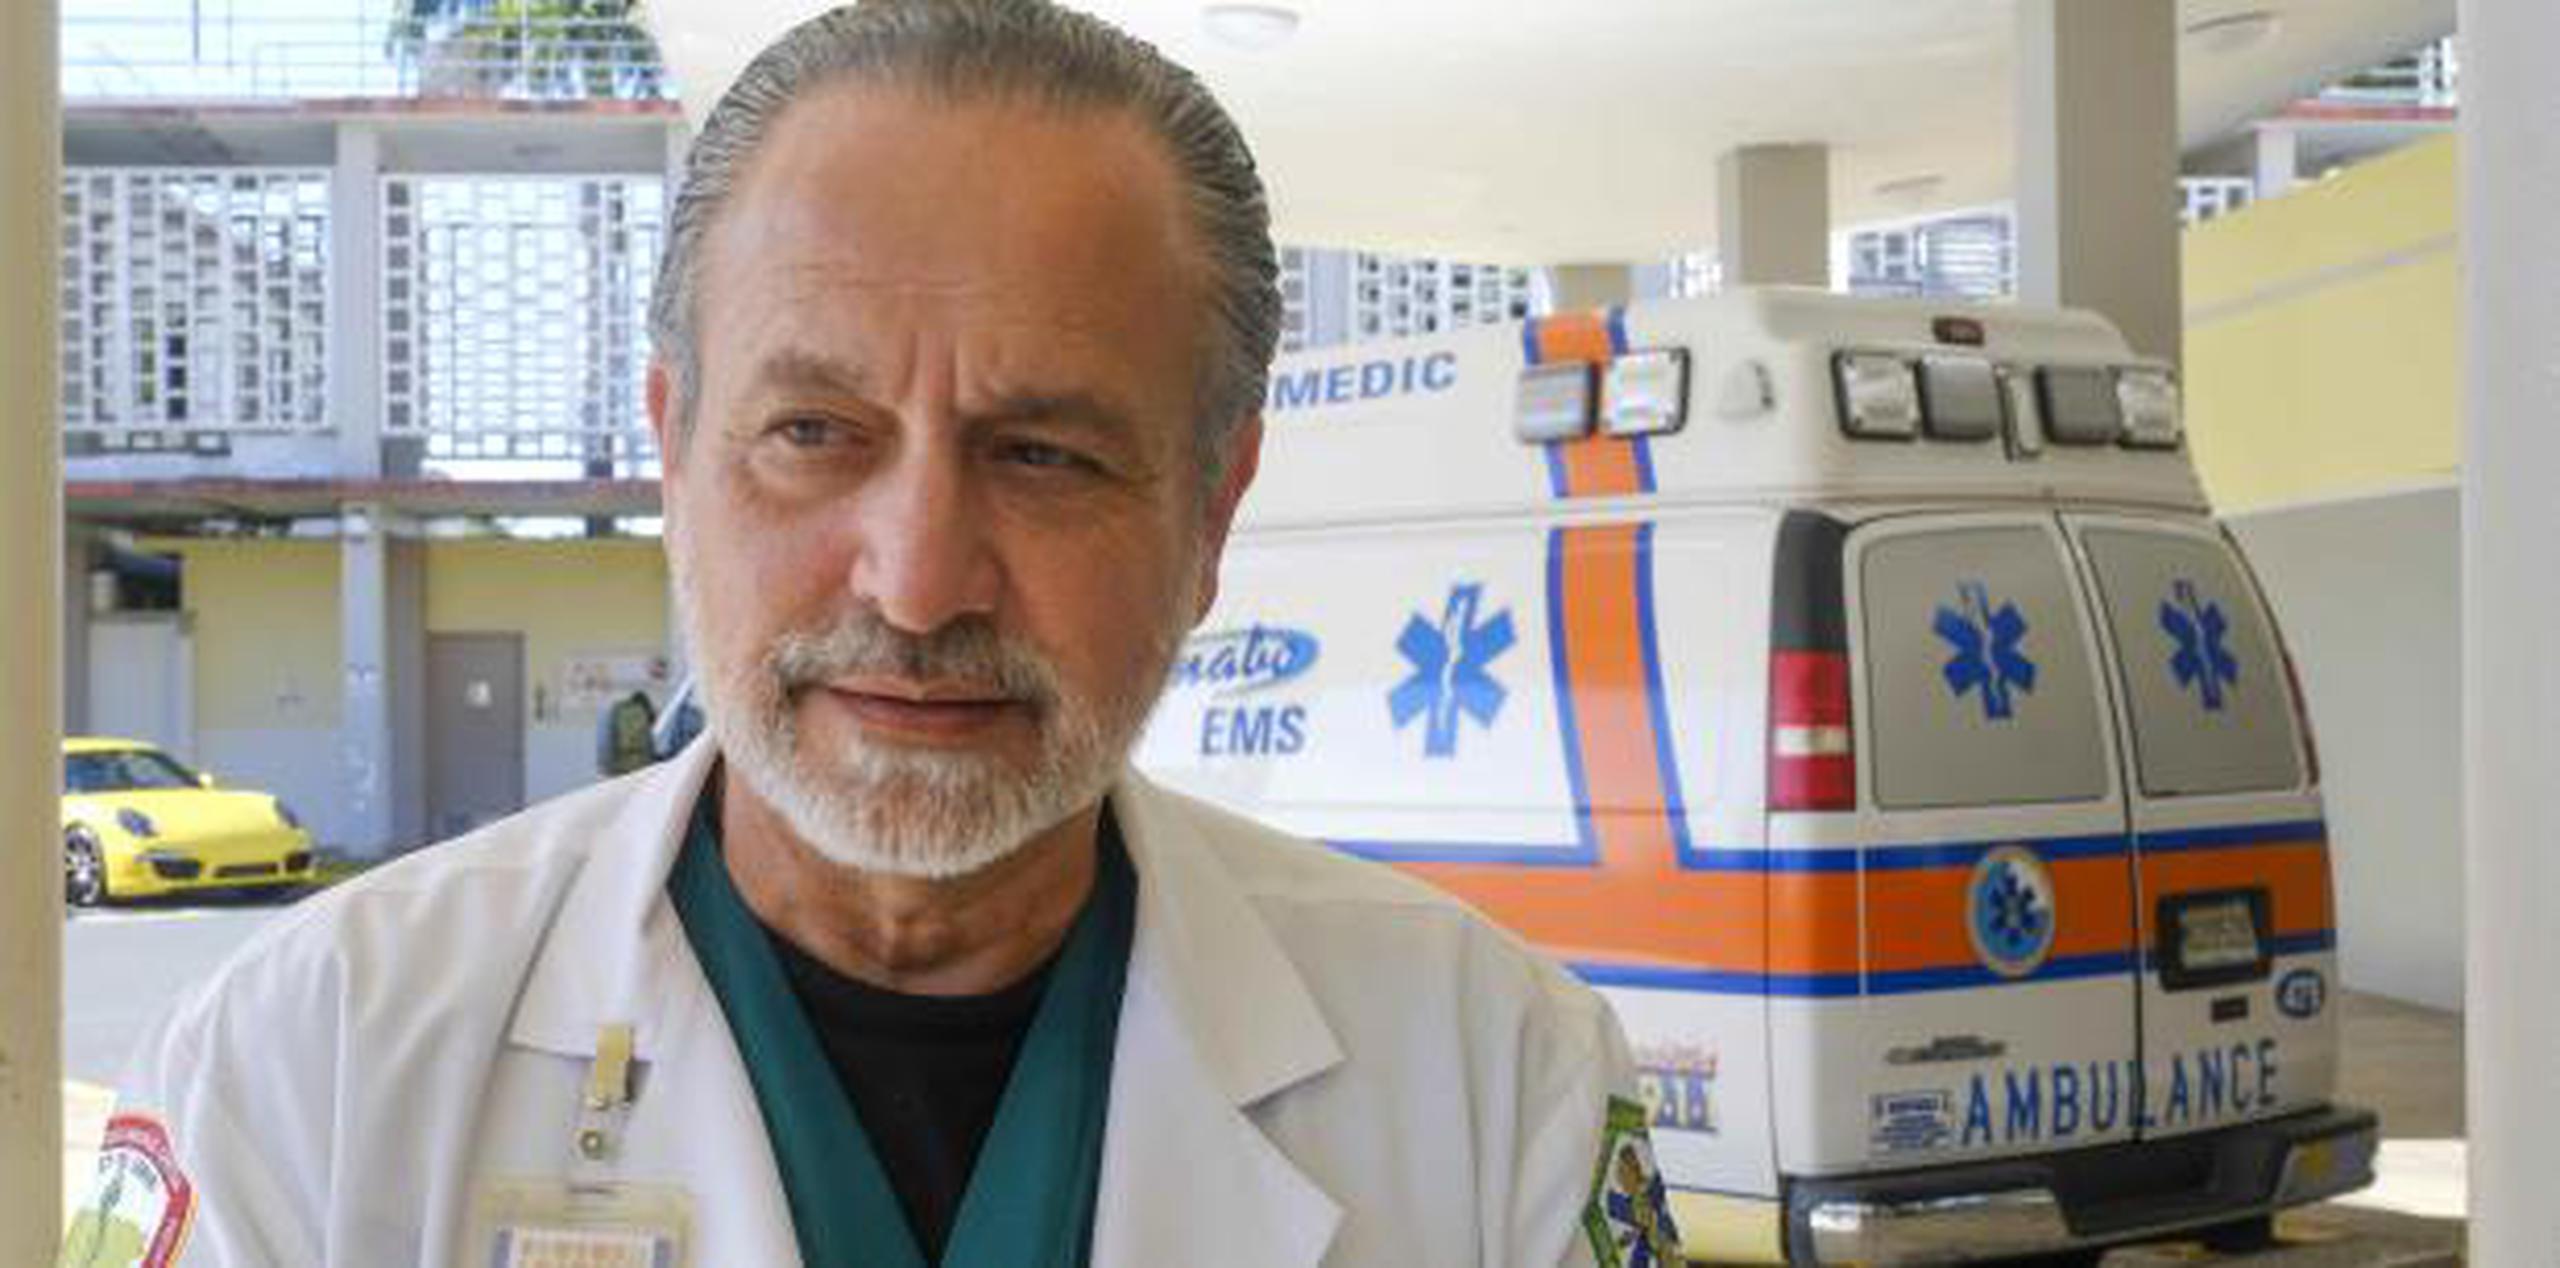 El director médico de ASEM, el Dr. Israel Ayala, confirmó que se hizo una petición de donación de sangre para el menor, ante cualquier eventualidad. (gerald.lopez@gfrmedia.com)